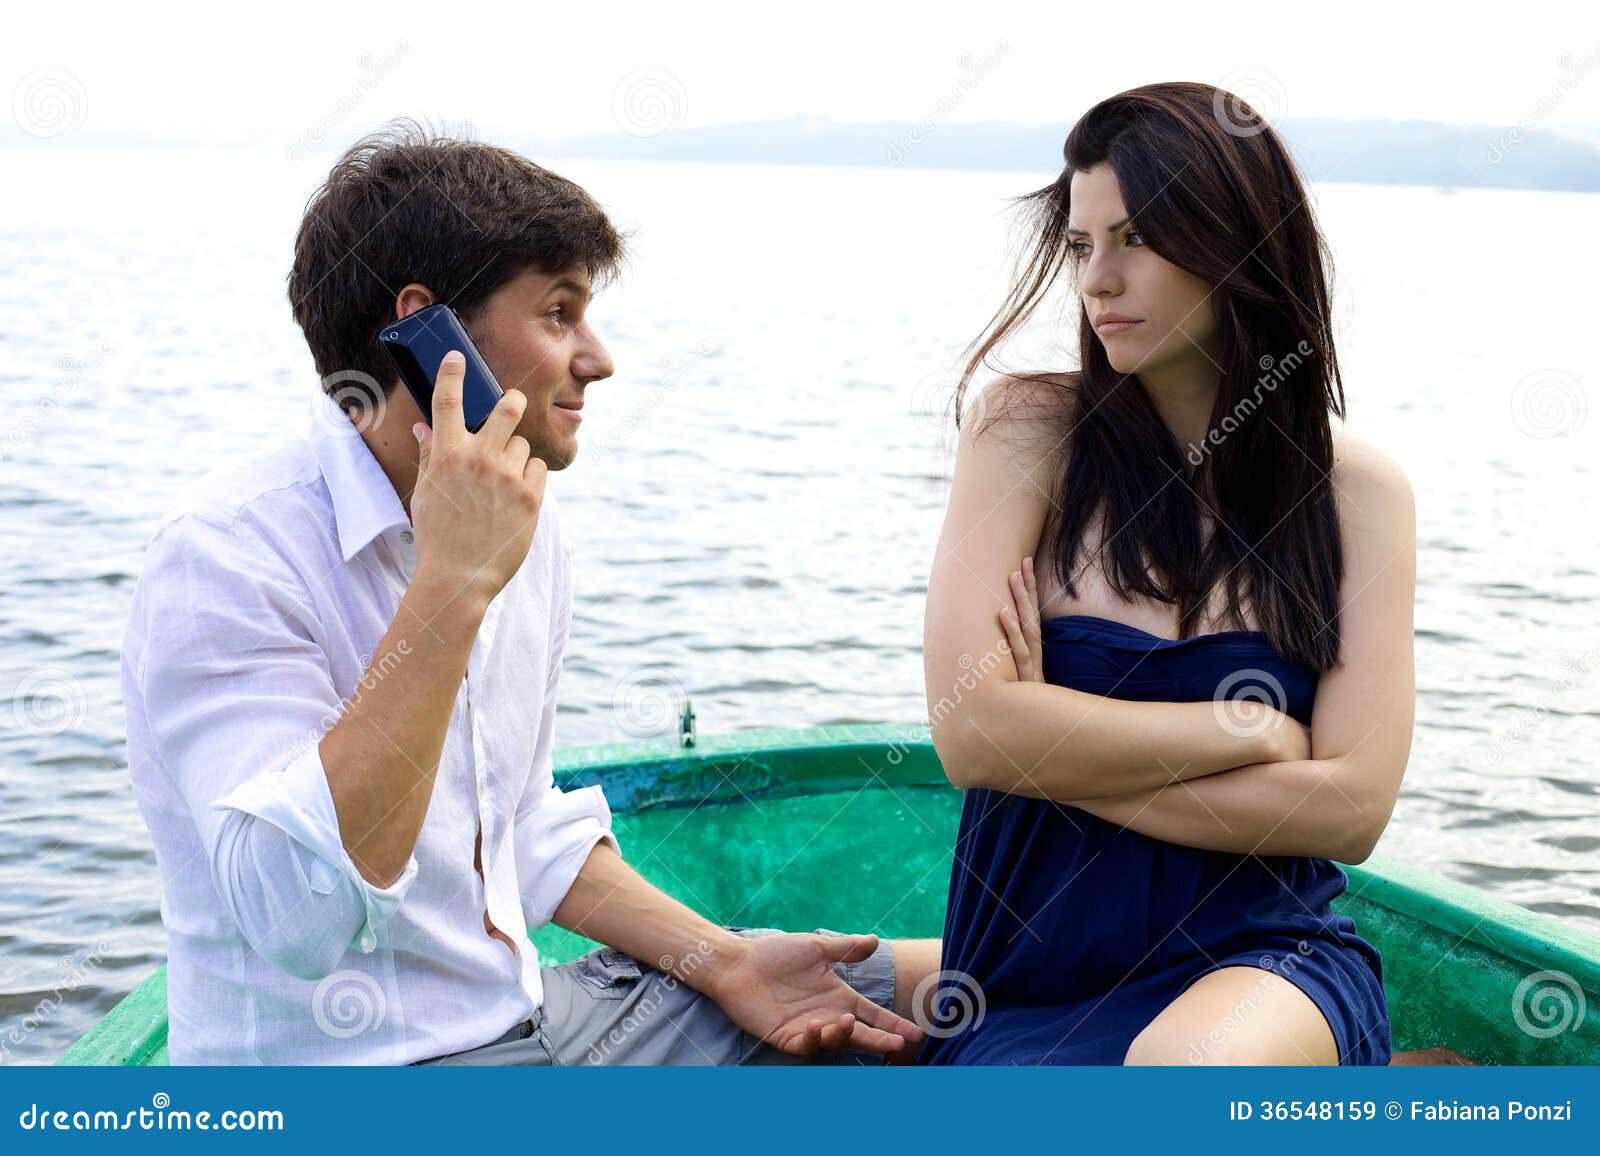 Почему парень не смотрит в глаза. Красивая девушка разговаривает с парнем. Мужчина смотрит на женщину фото. Какие фото девушек смотрят мужчины. Парень смотрит в телефон и улыбается на фото девушки.